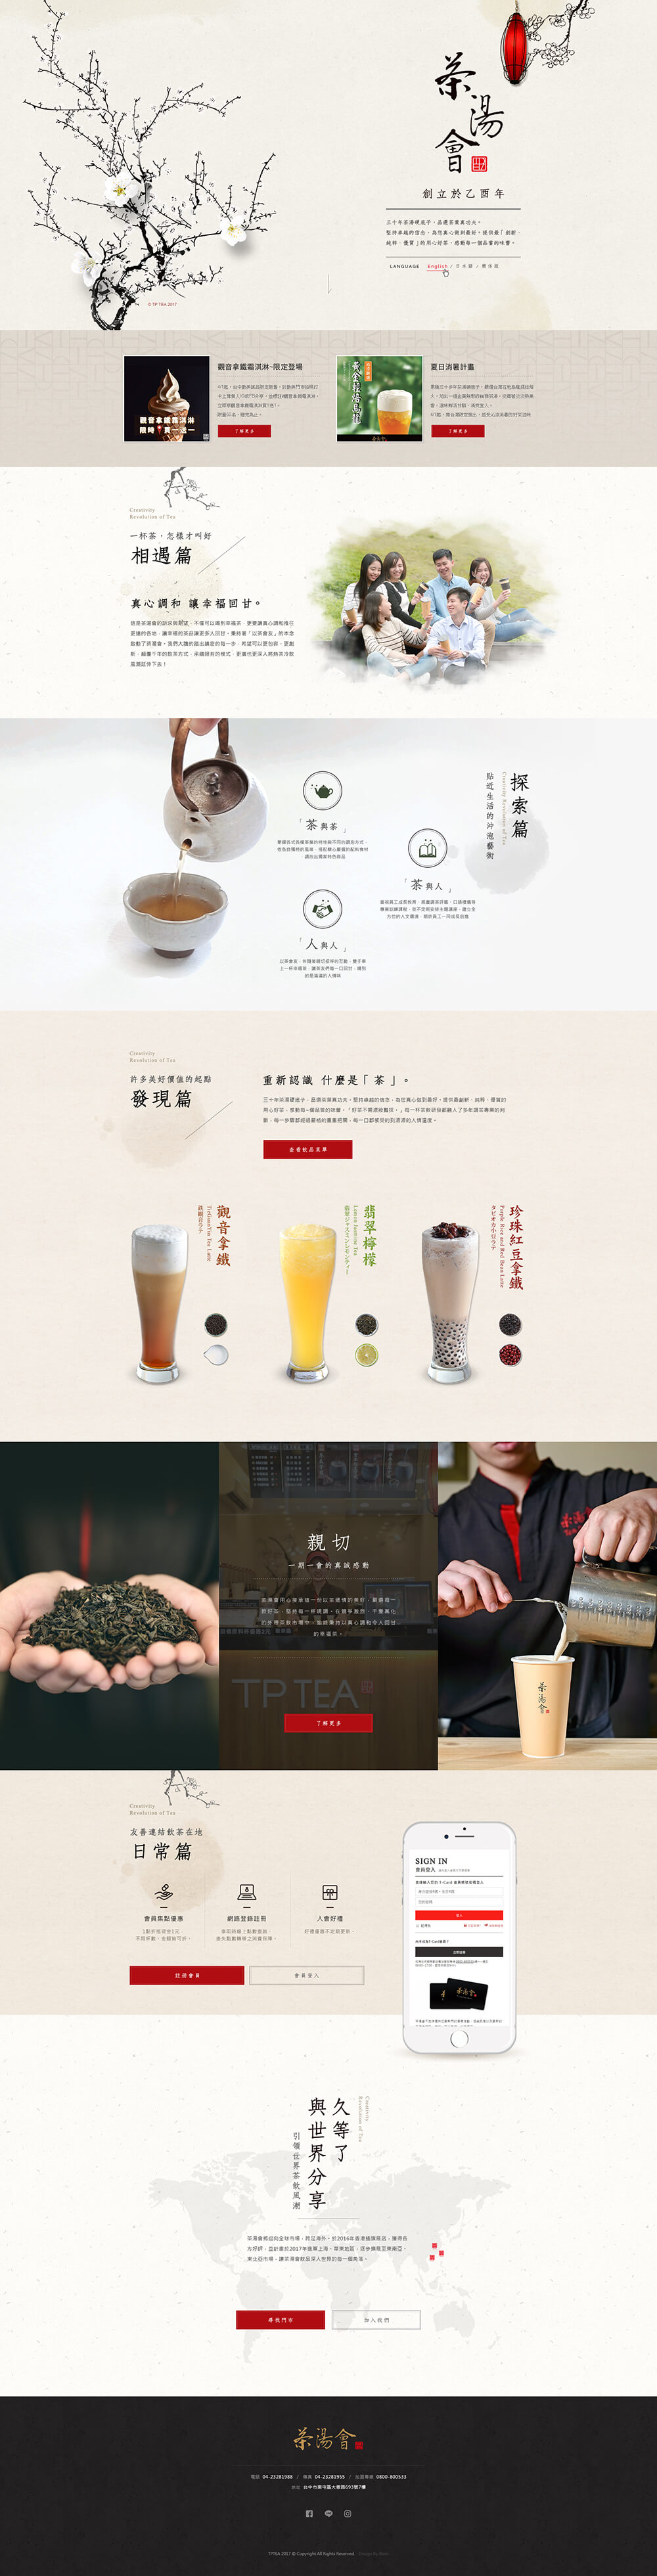 茶湯會-網頁設計